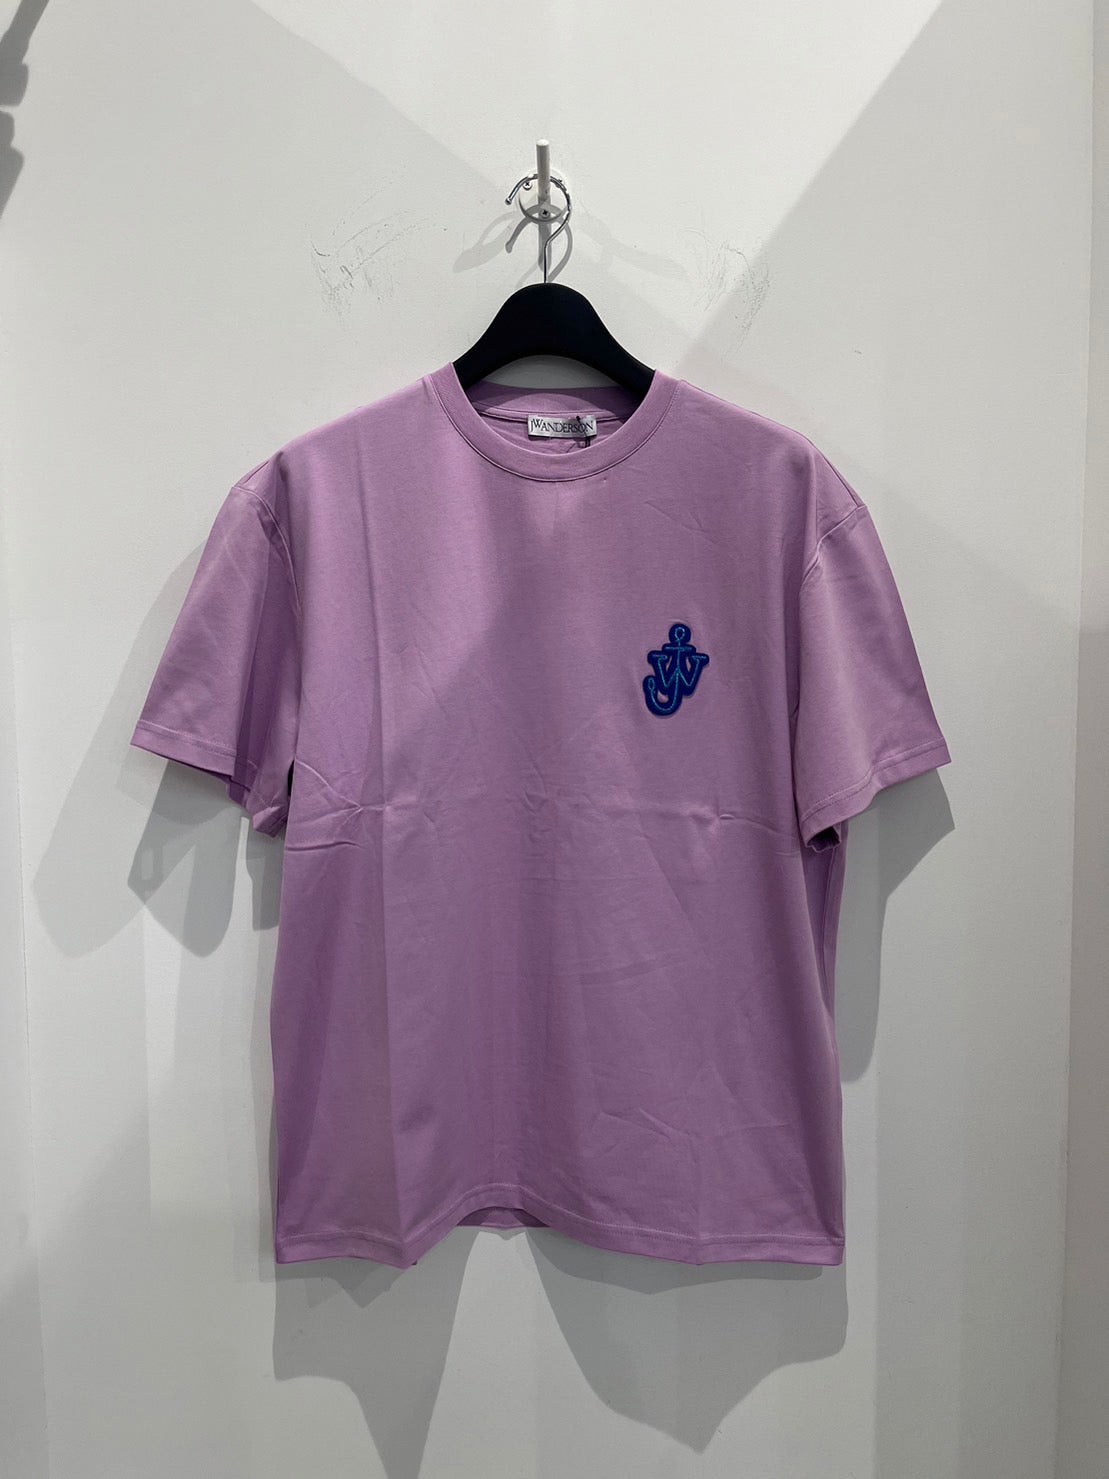 JW ANDERSON/JWアンダーソン Tシャツ <JT0061/PG0772> パープル(紫)